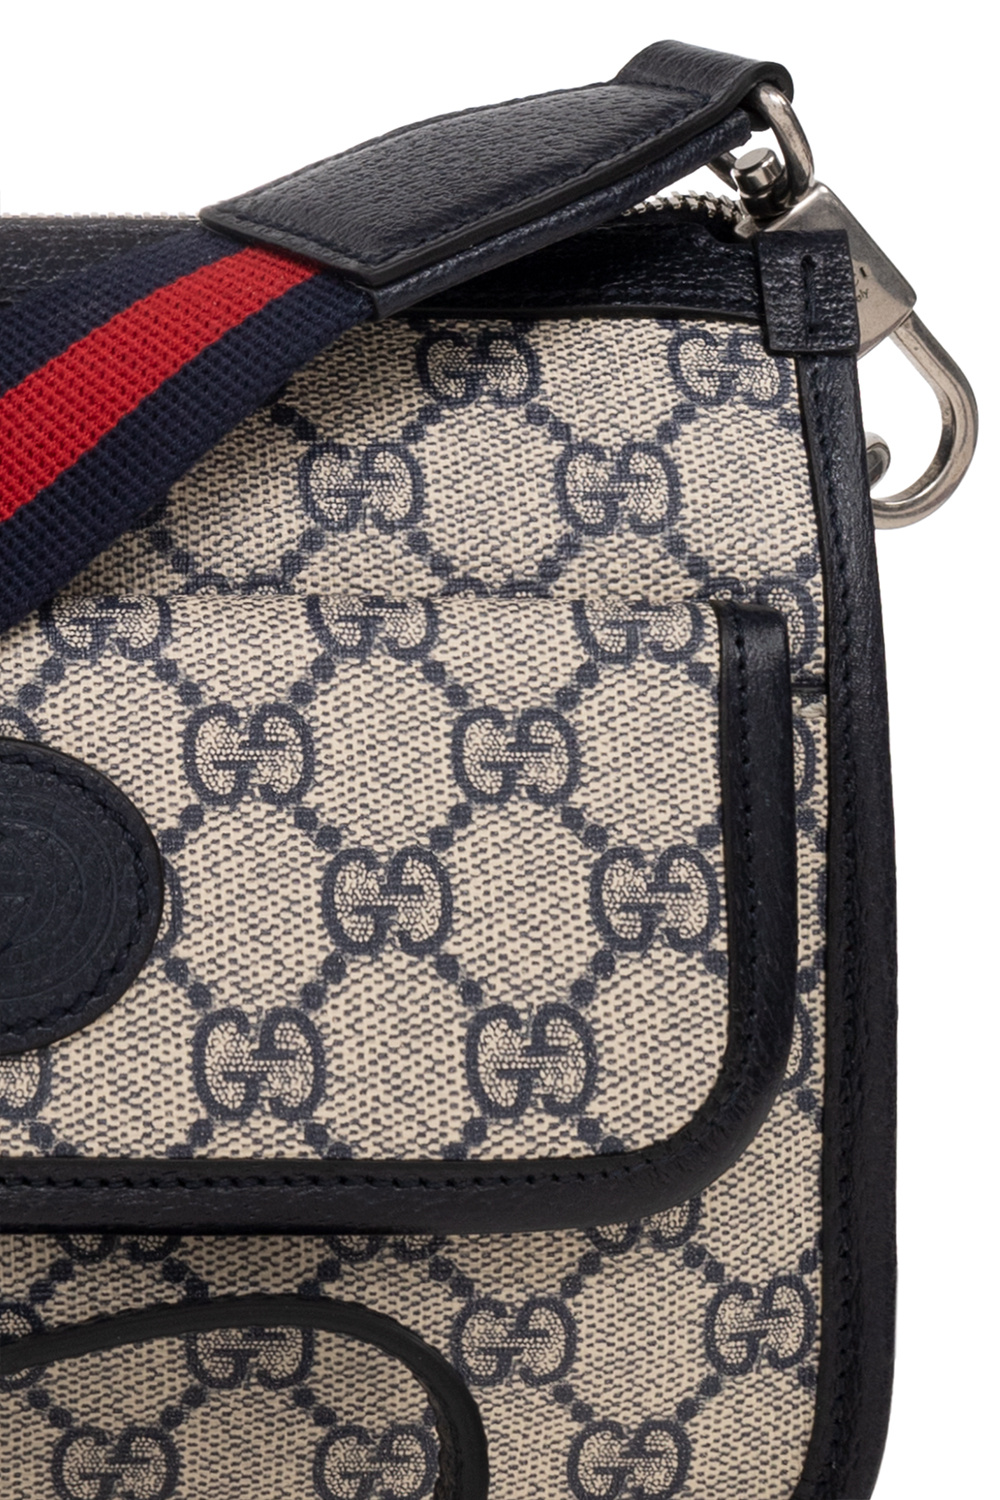 Gucci Shoulder bag with logo